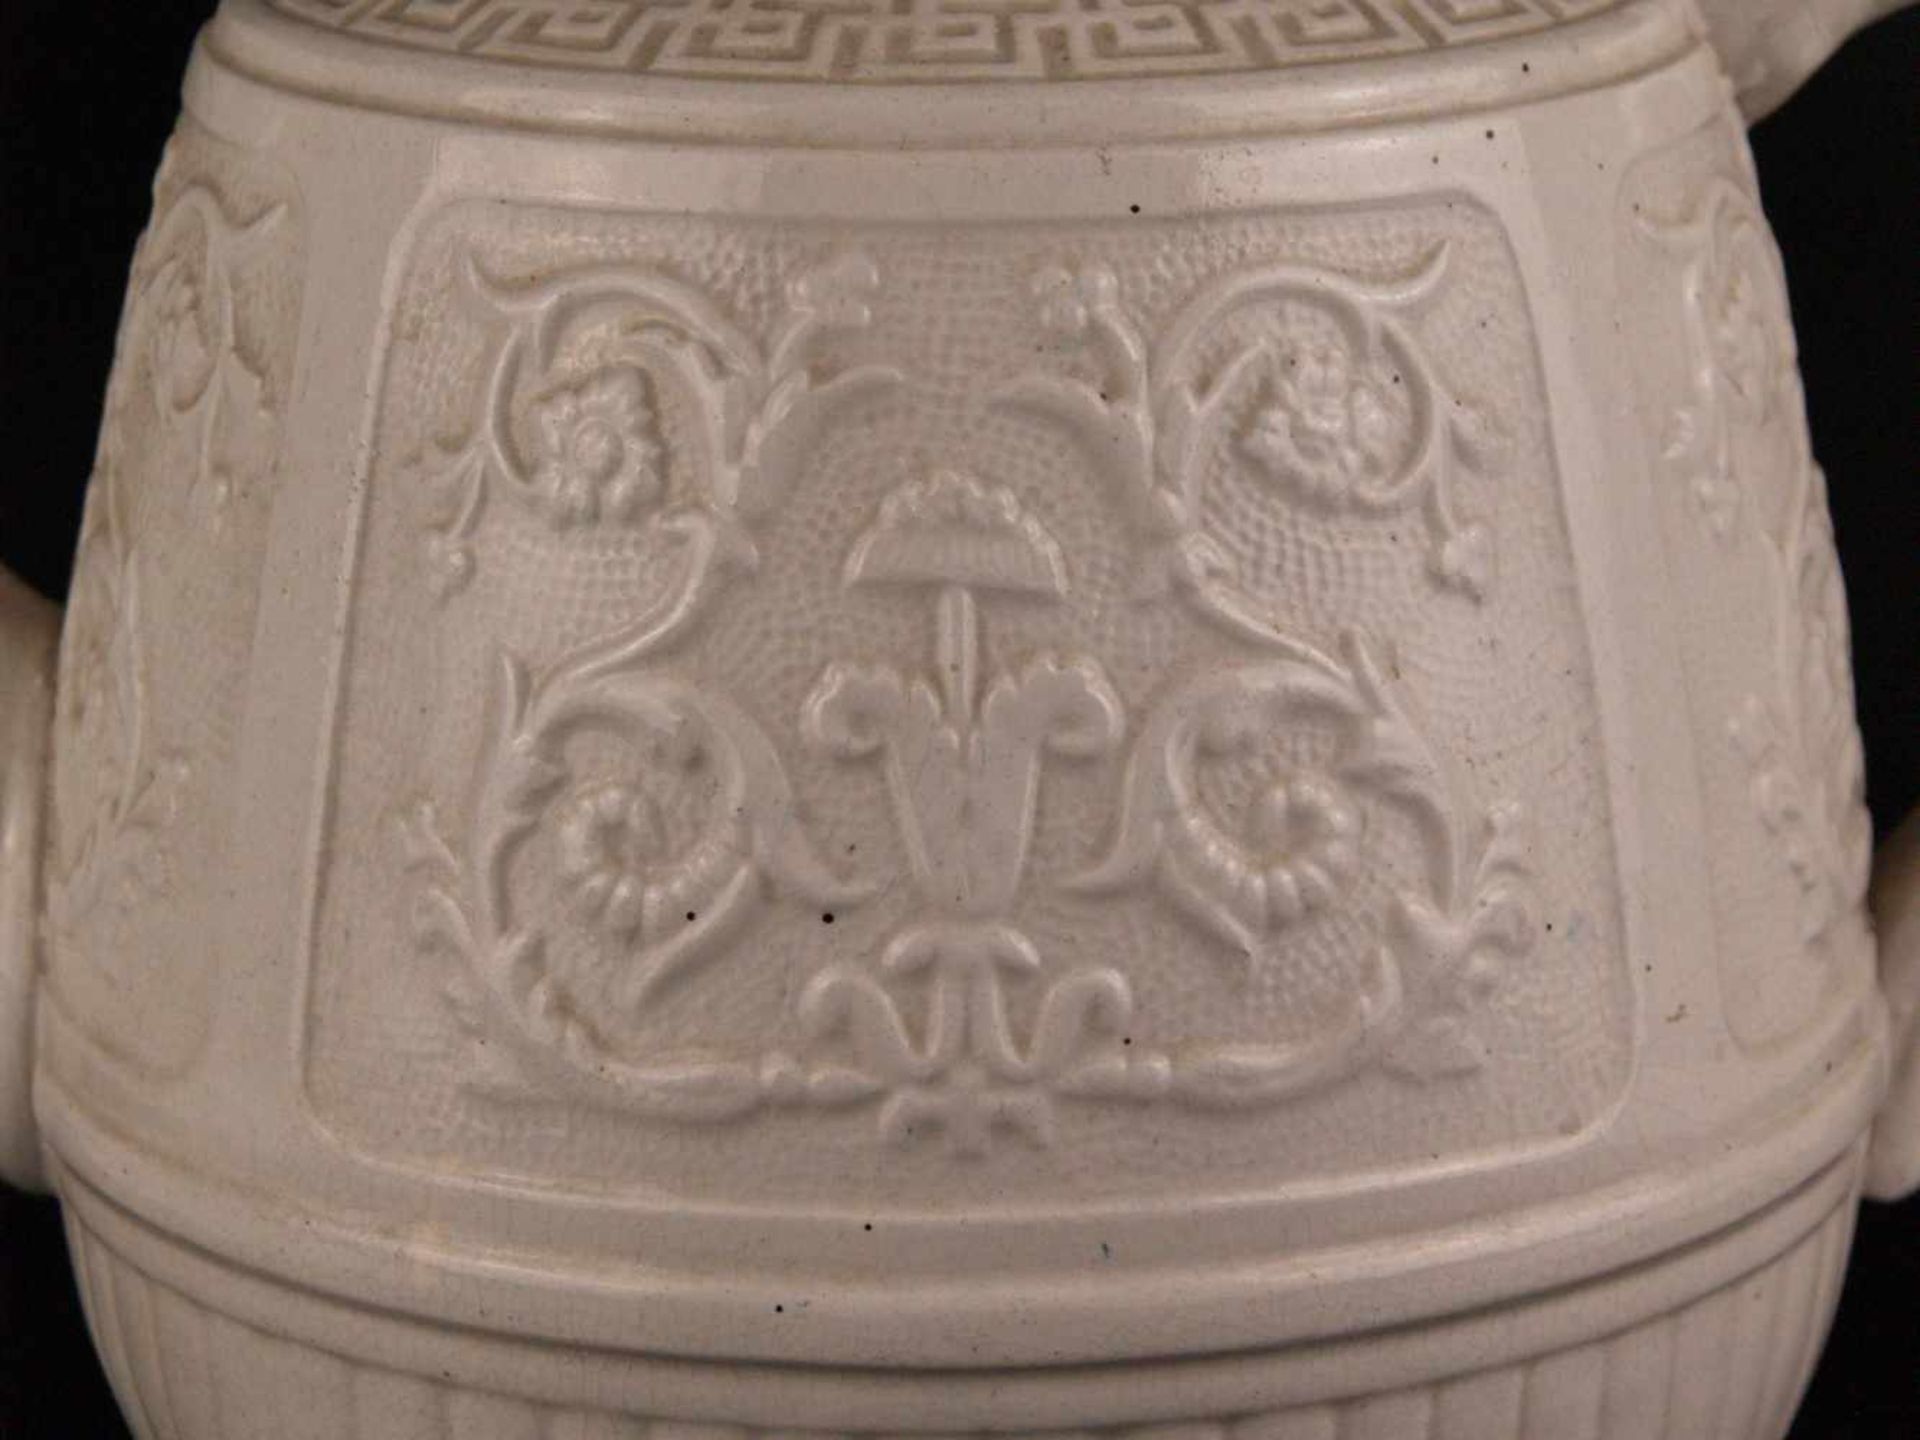 Große Teekanne - England 19.Jh., Steingut, cremefarben glasiert, mit ostasiatischem Reliefdekor, - Bild 4 aus 9